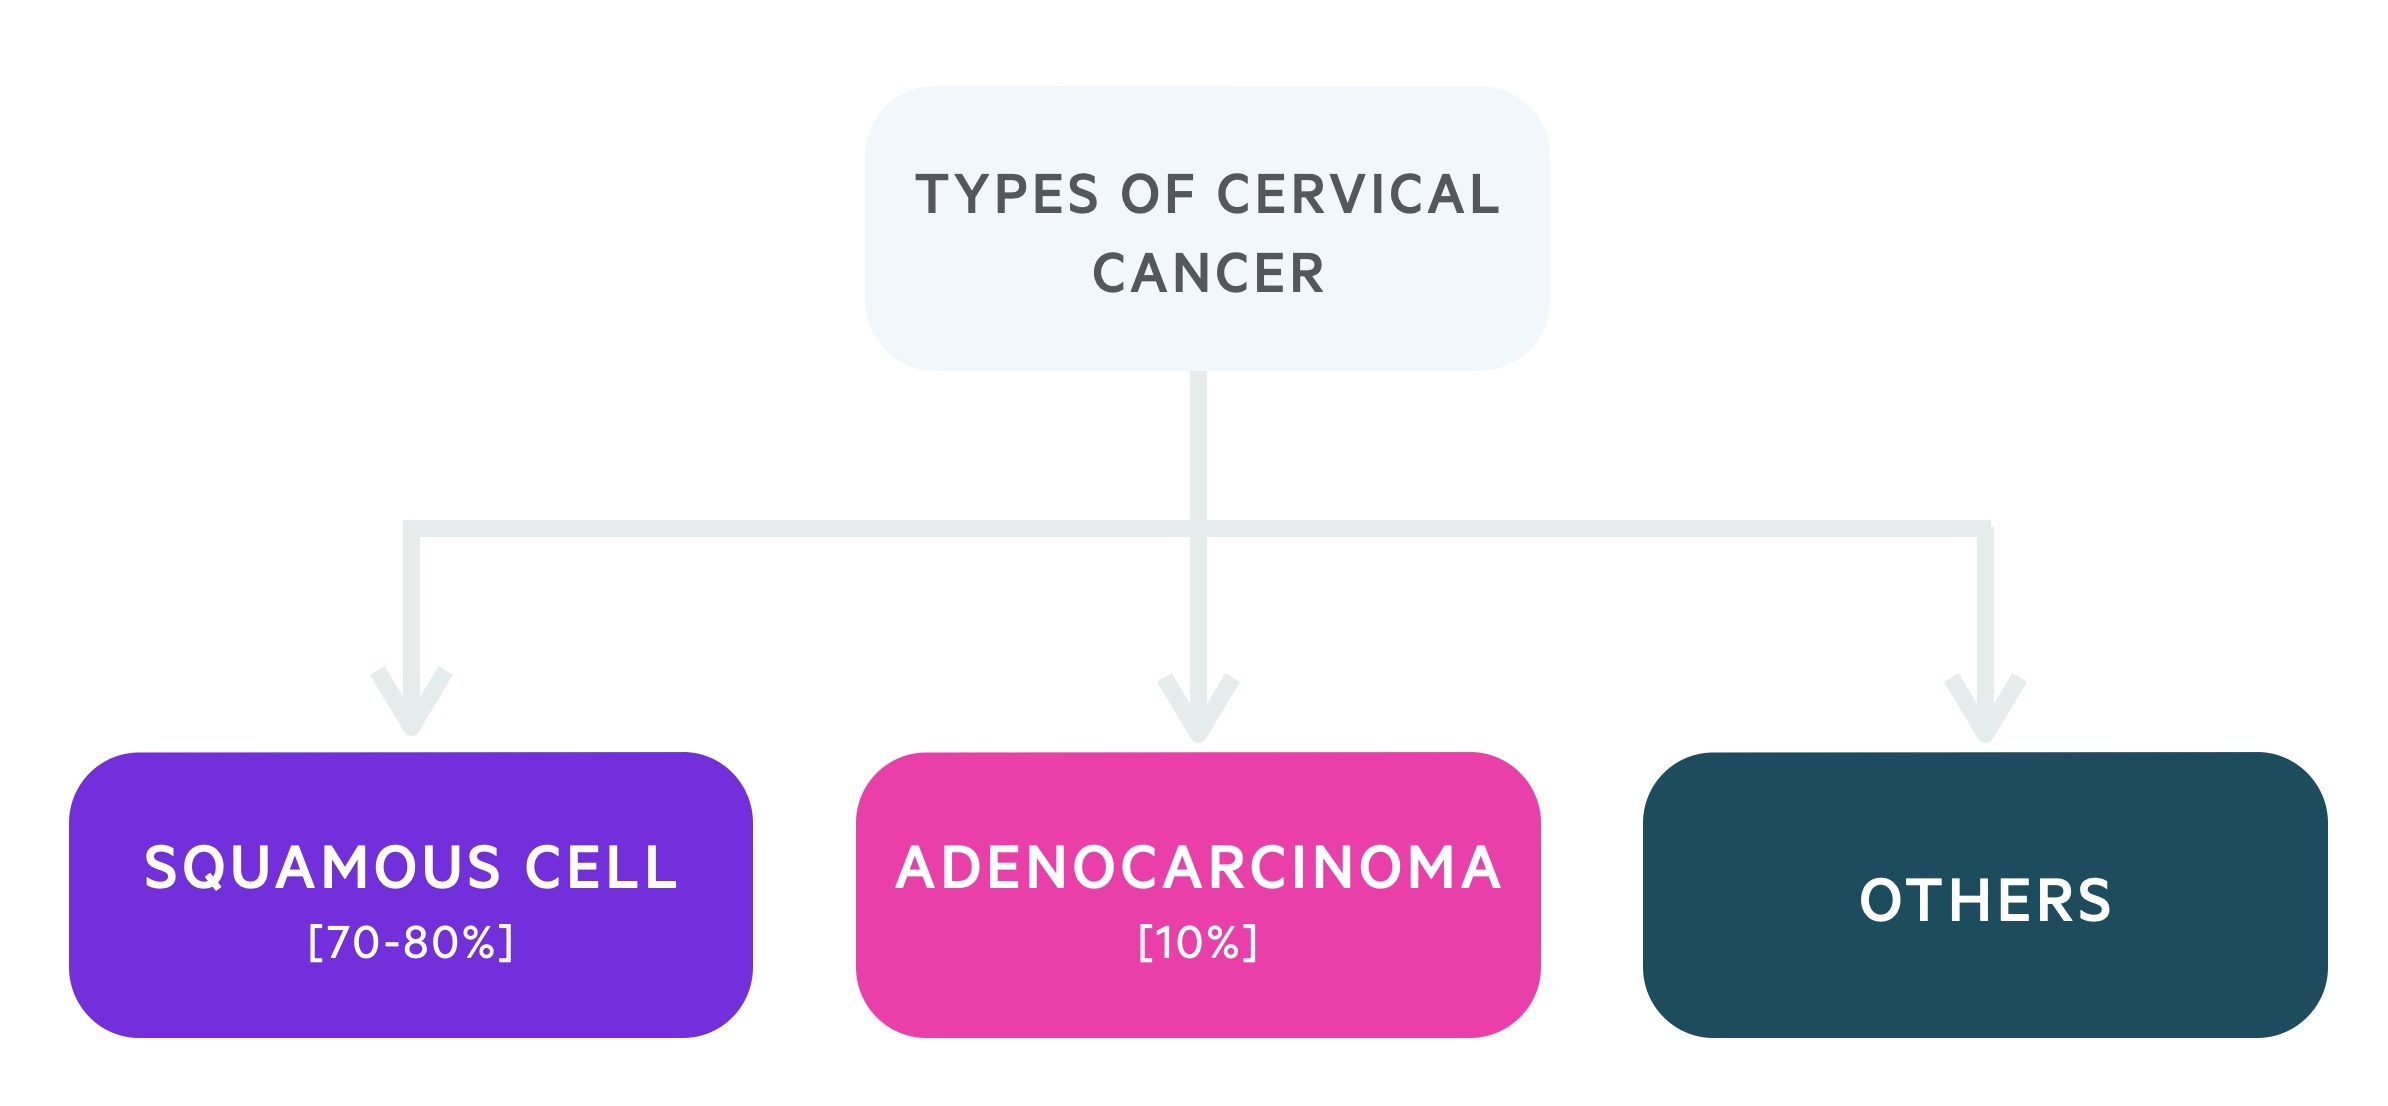 Types of cervical cancer